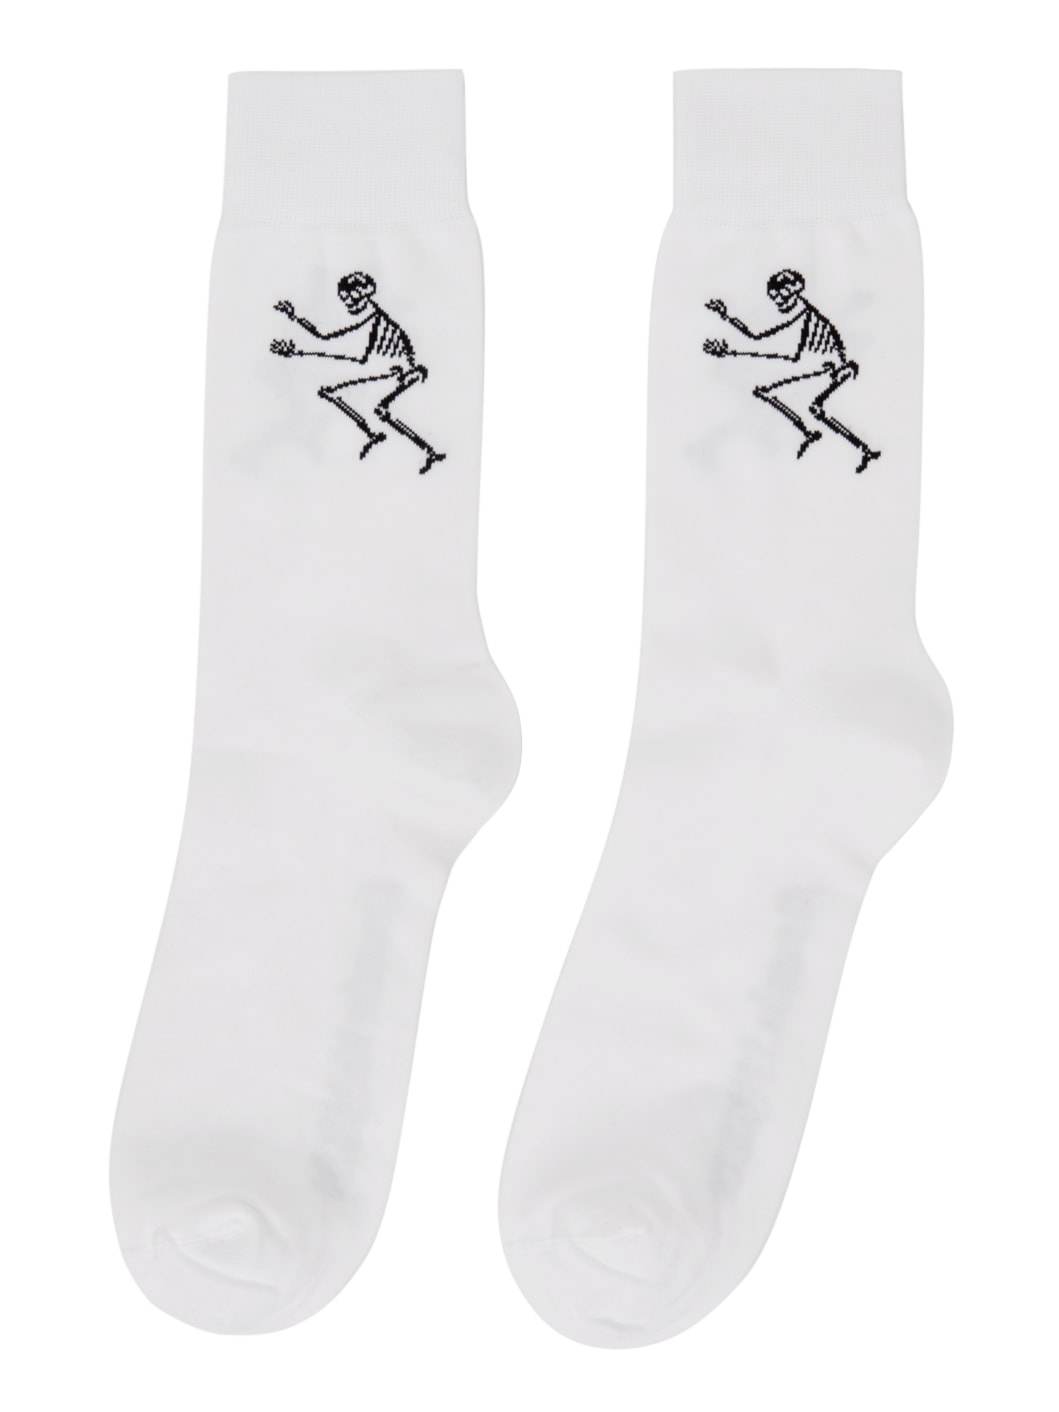 White Skeleton Socks - 2